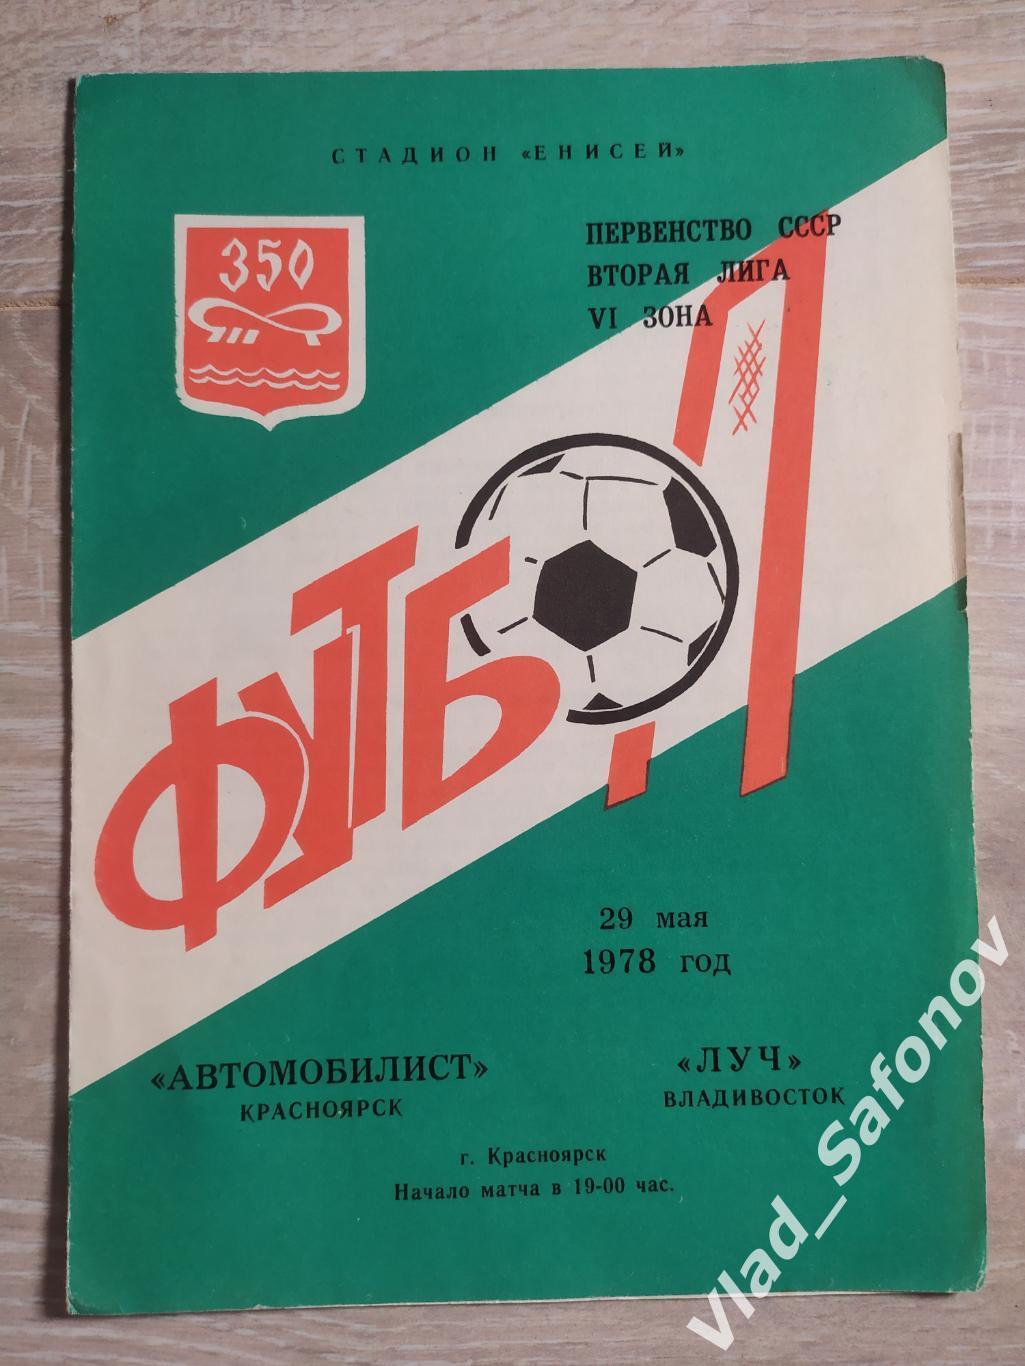 Автомобилист(Красноярск) - Луч(Владивосток). 2 лига. 29/05/1978